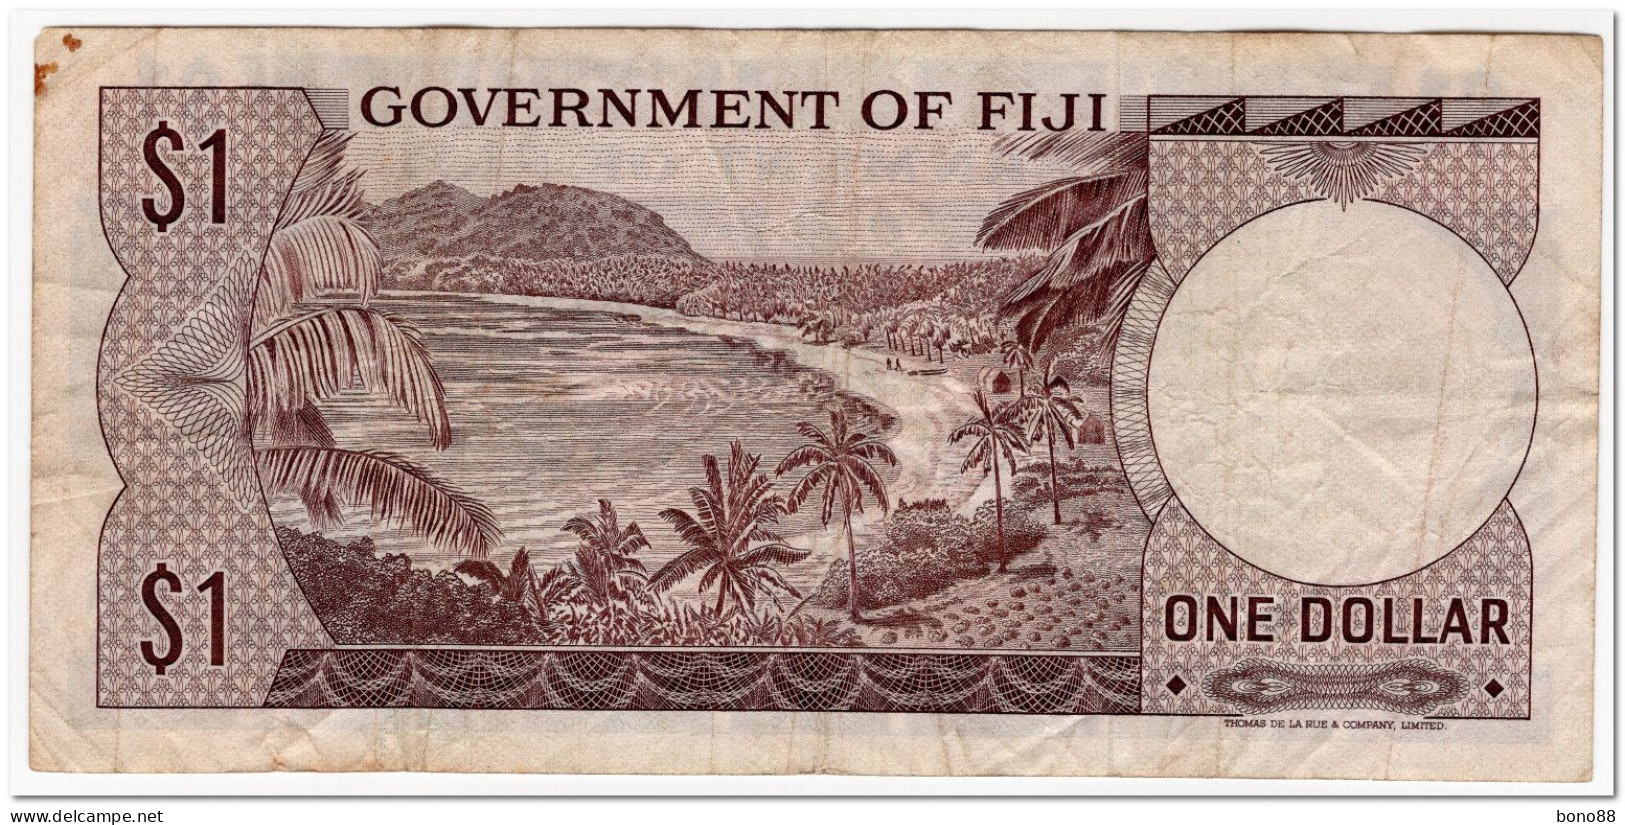 FIJI,1 DOLLAR,1969,P.59,F-VF - Fiji